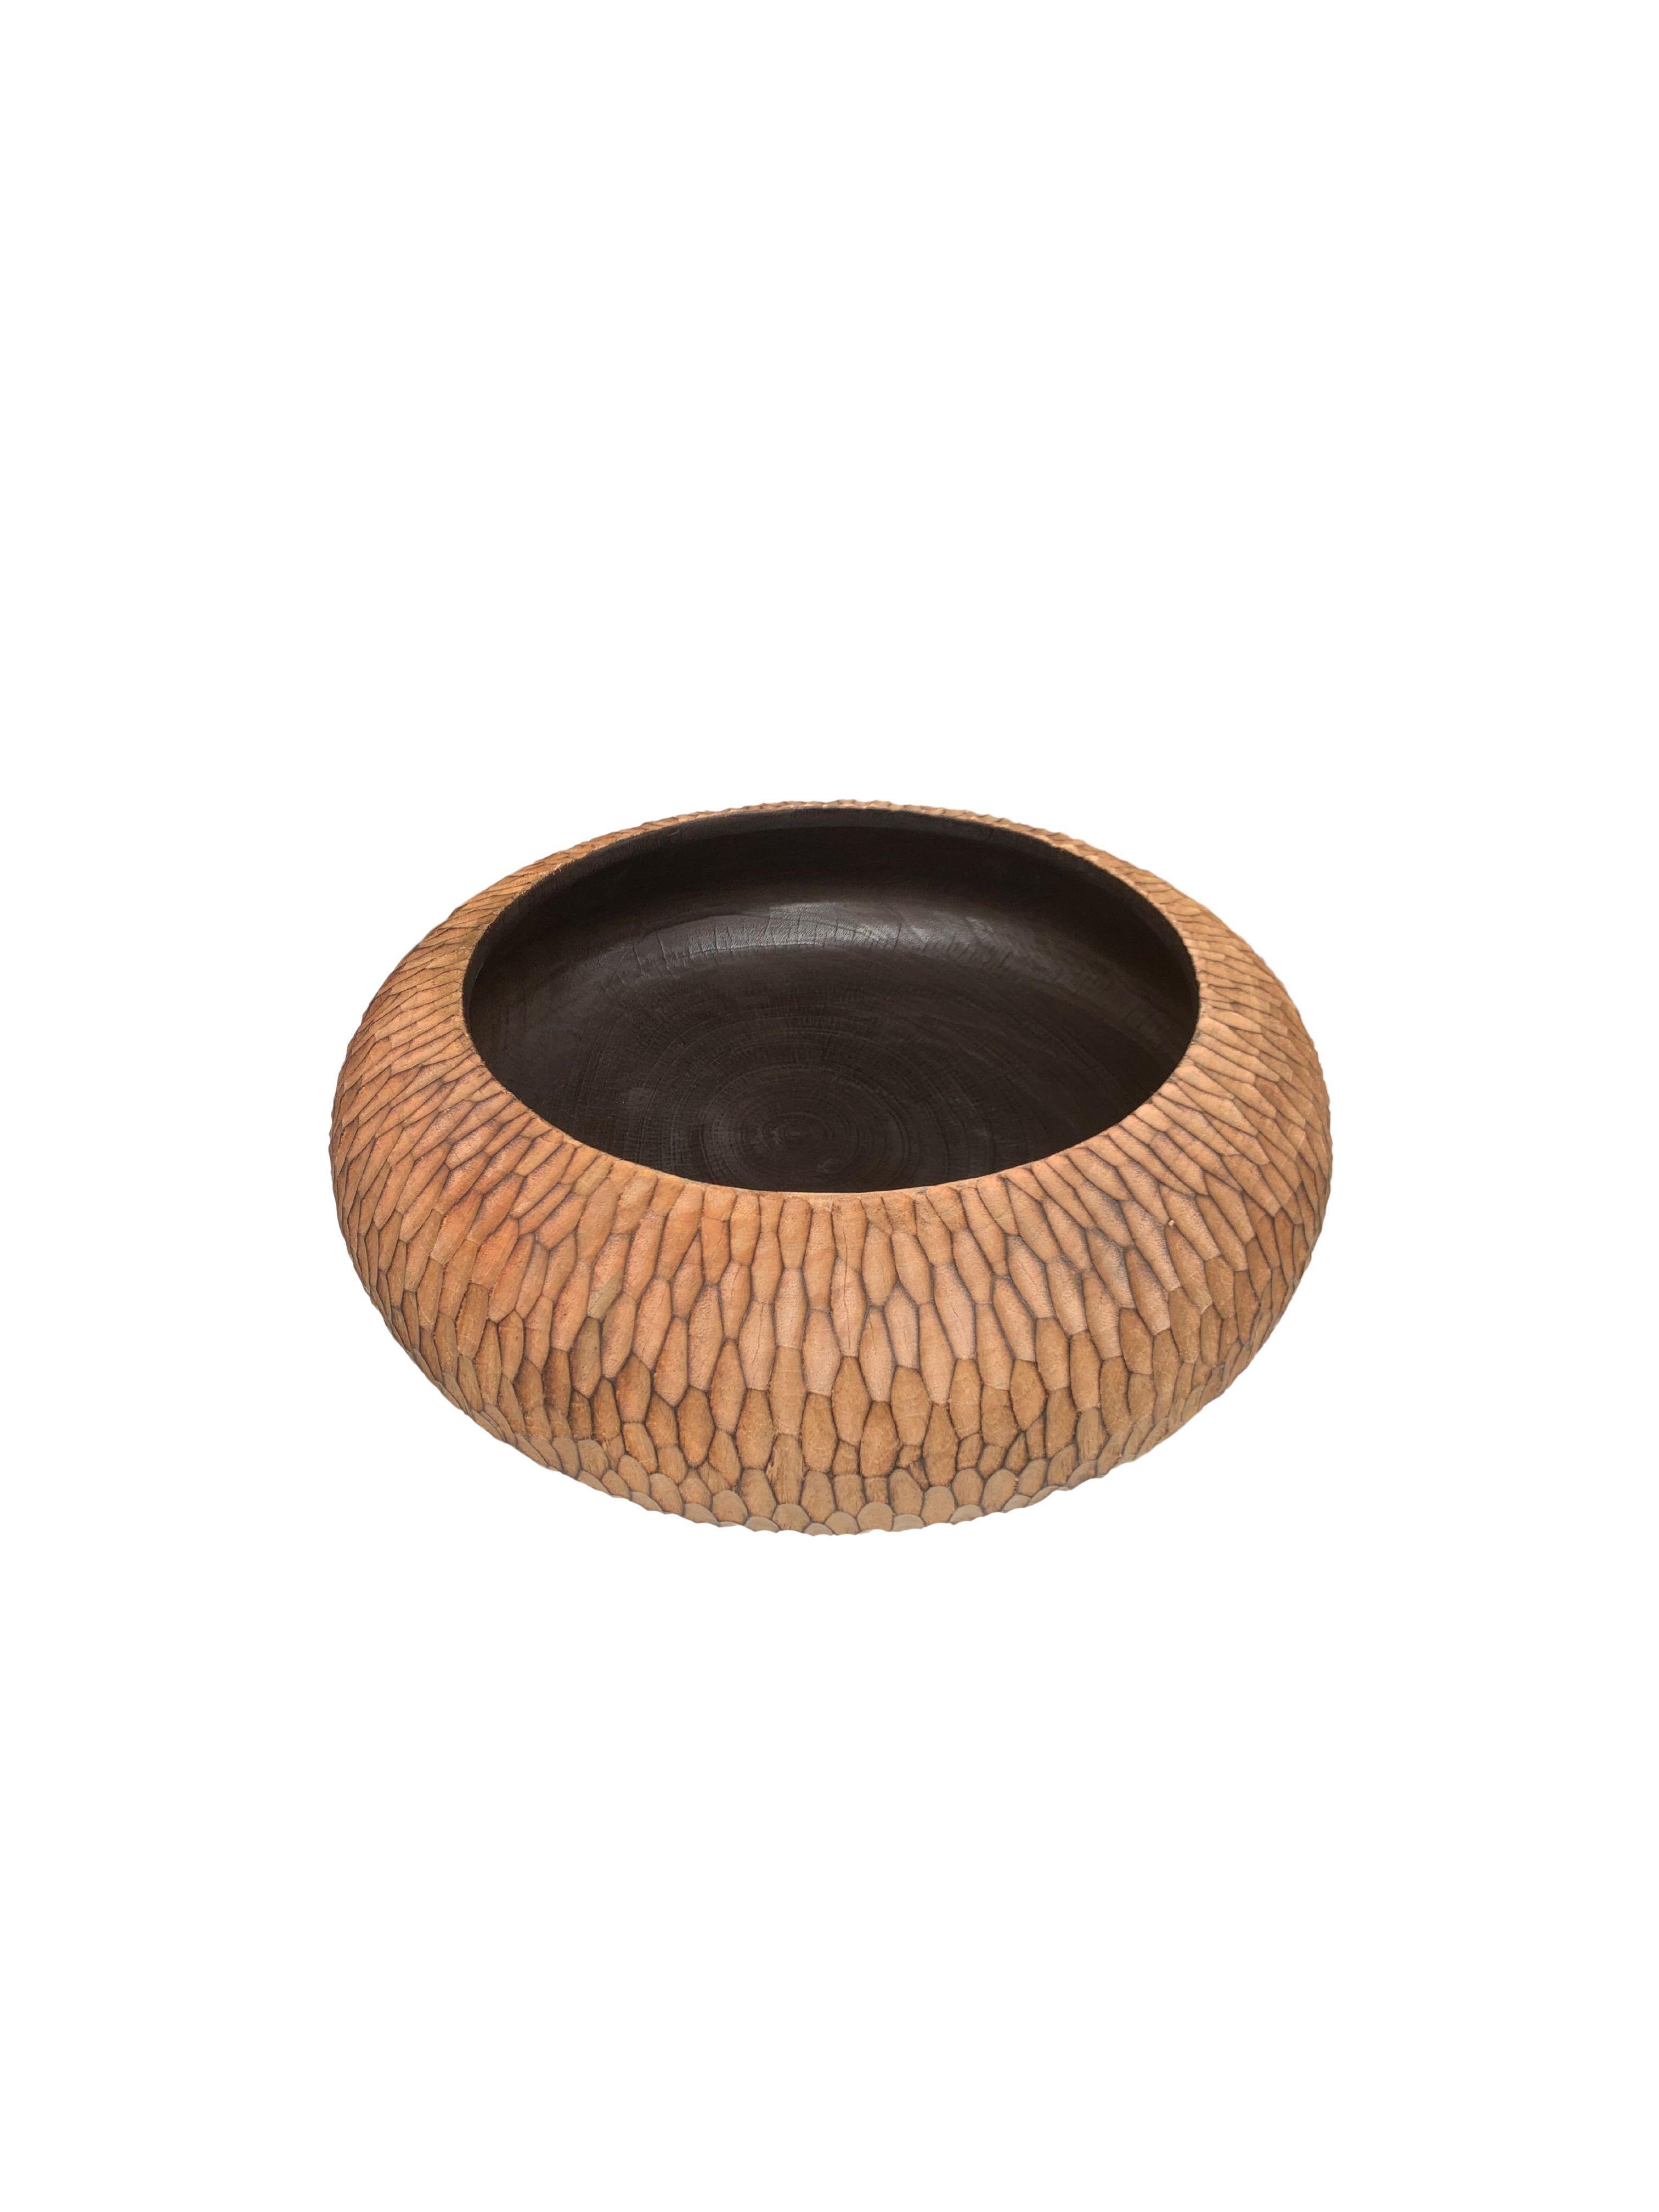 Un bol en bois de manguier fabriqué à la main. Le bol a été découpé dans une dalle de bois de manguier beaucoup plus grande et présente une texture taillée à la main sur ses côtés. Ce bol a été brûlé trois fois pour obtenir la riche couleur noire